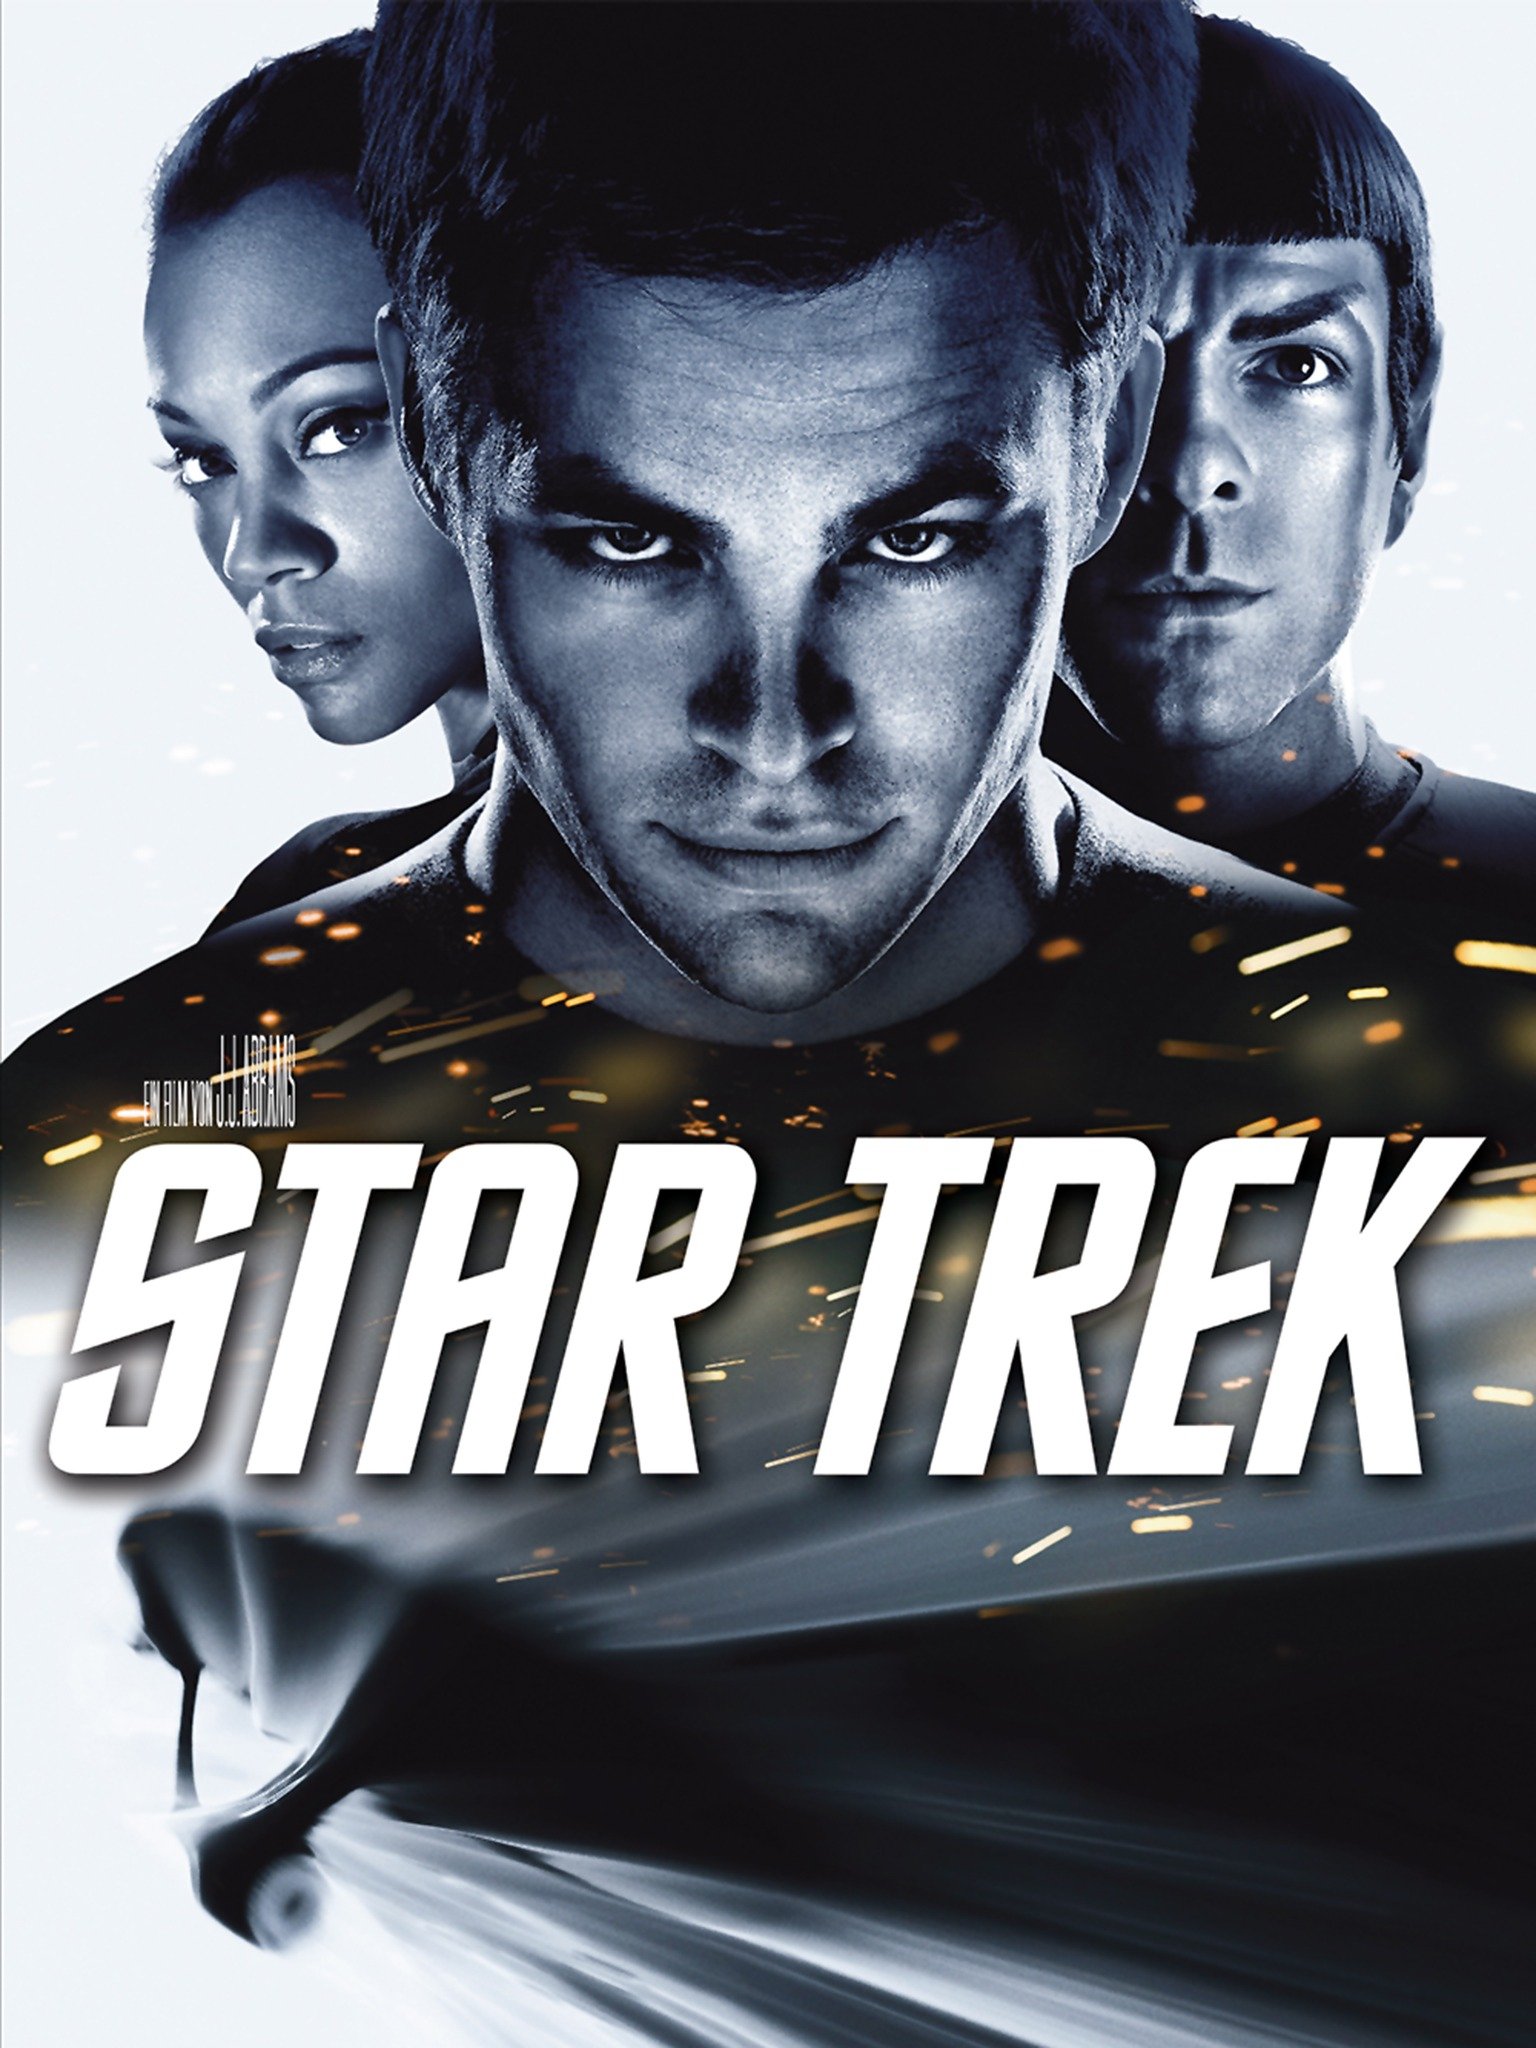 Star Trek (film) - Wikipedia